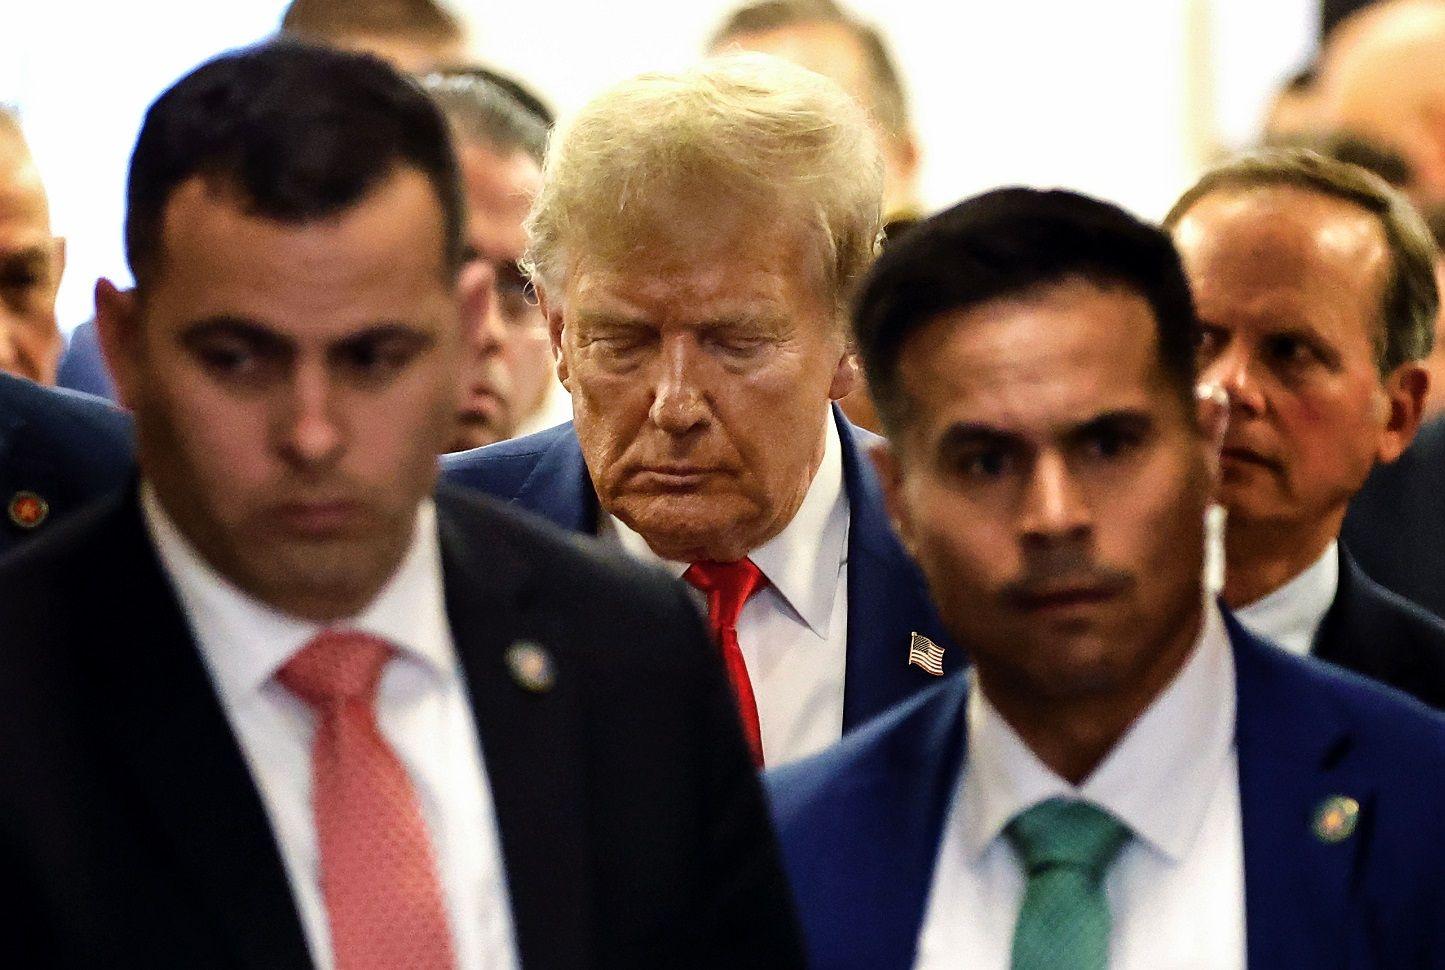 Trump caminhando com feiçãõ séria e rodeado de assessores e seguranças